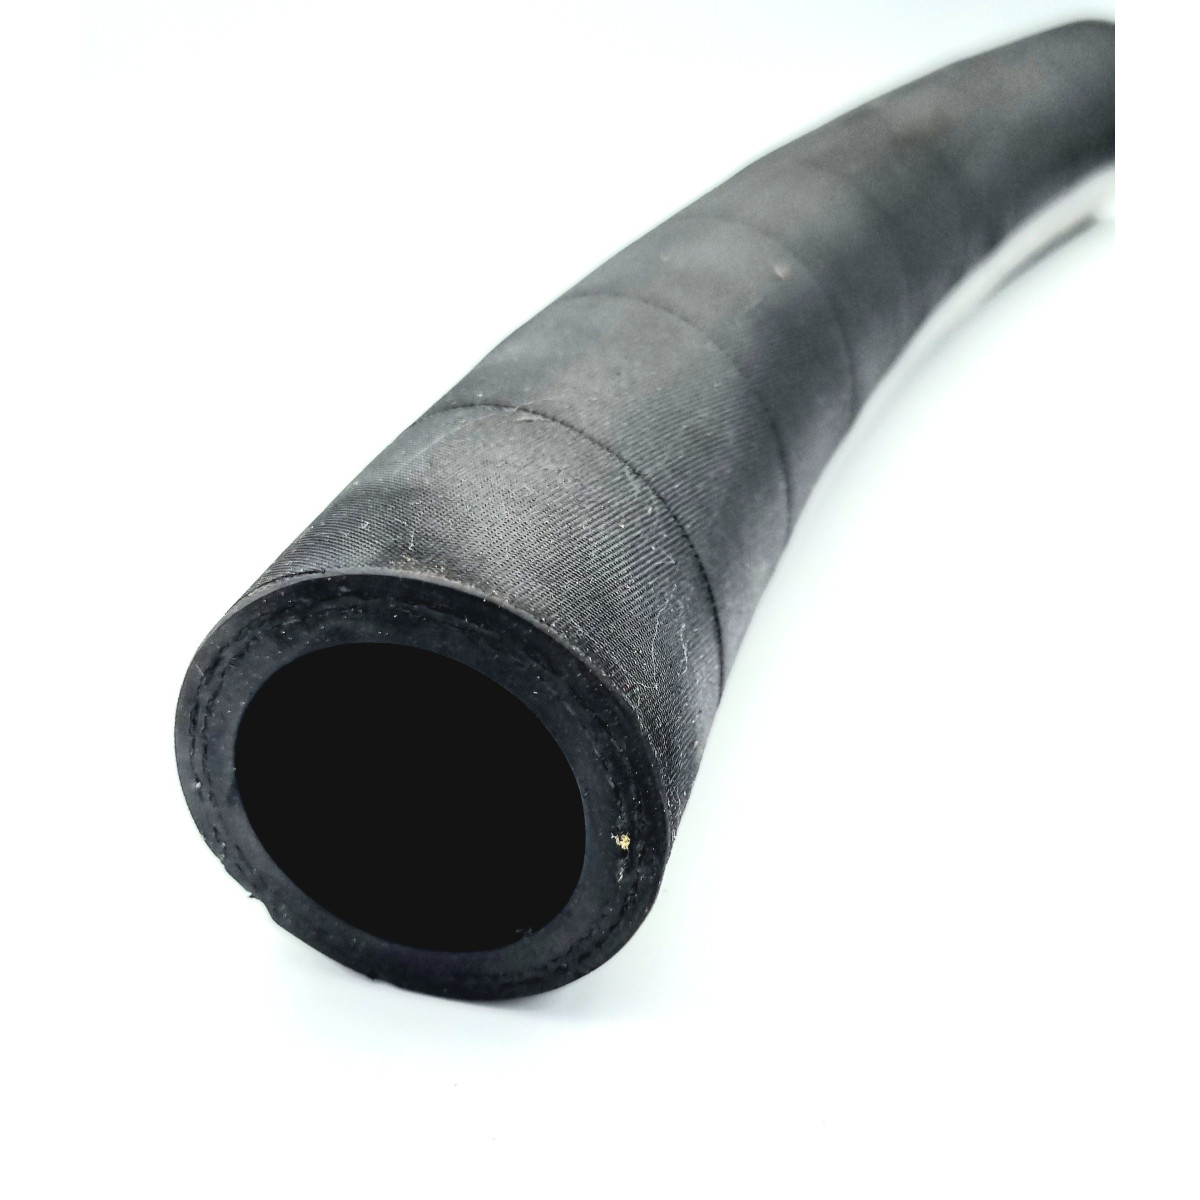 Raccord du tuyau flexible métallique à protection électrique Application